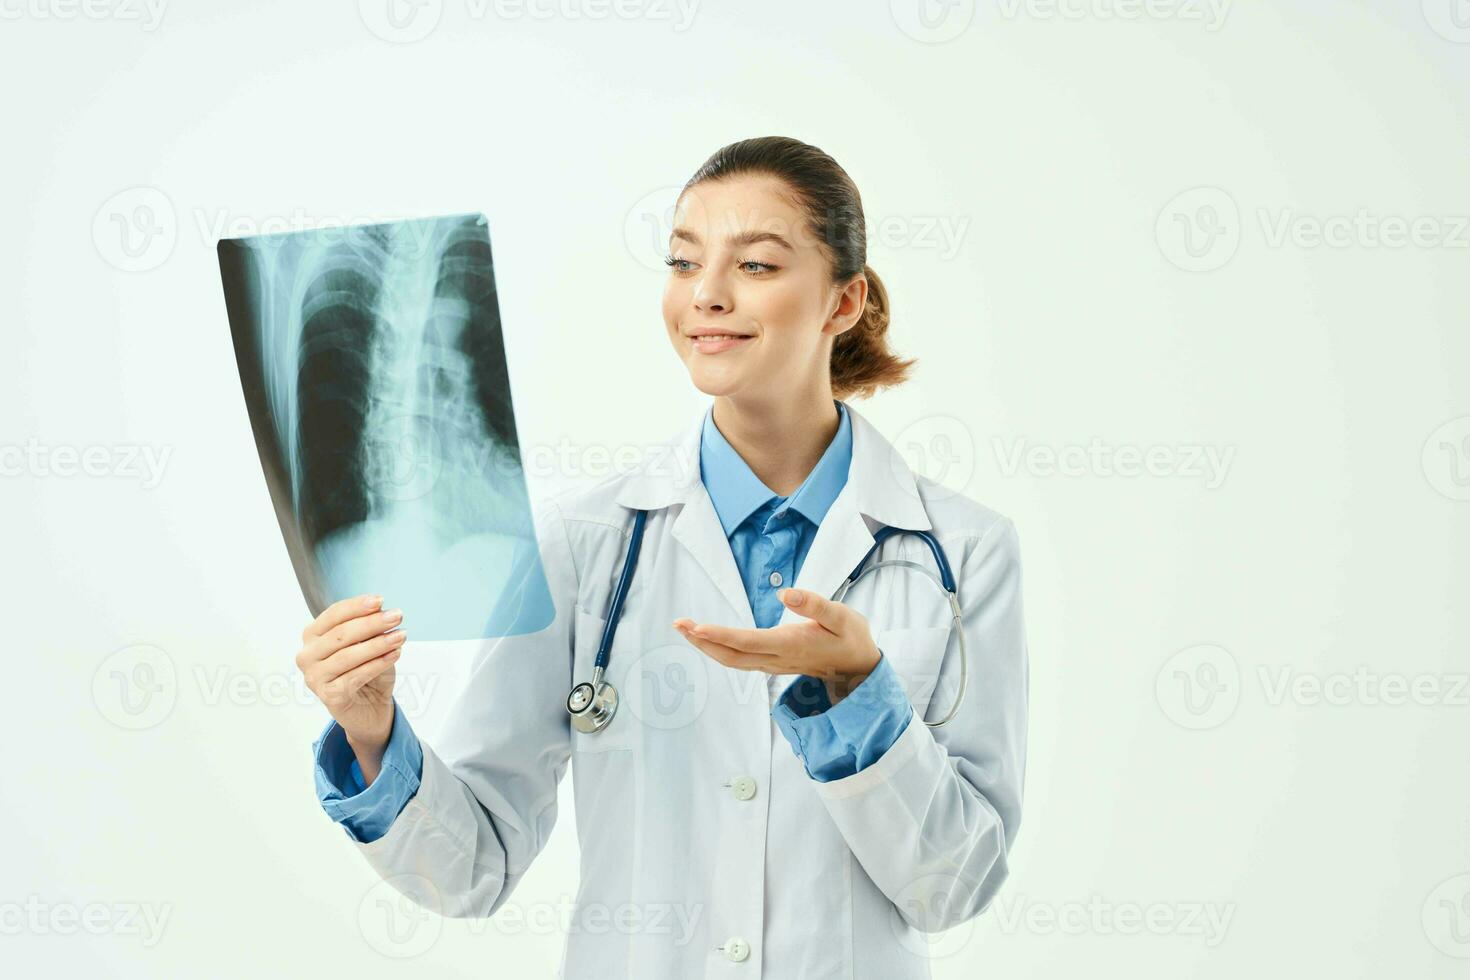 femme radiologue de examen radiographie émotion photo